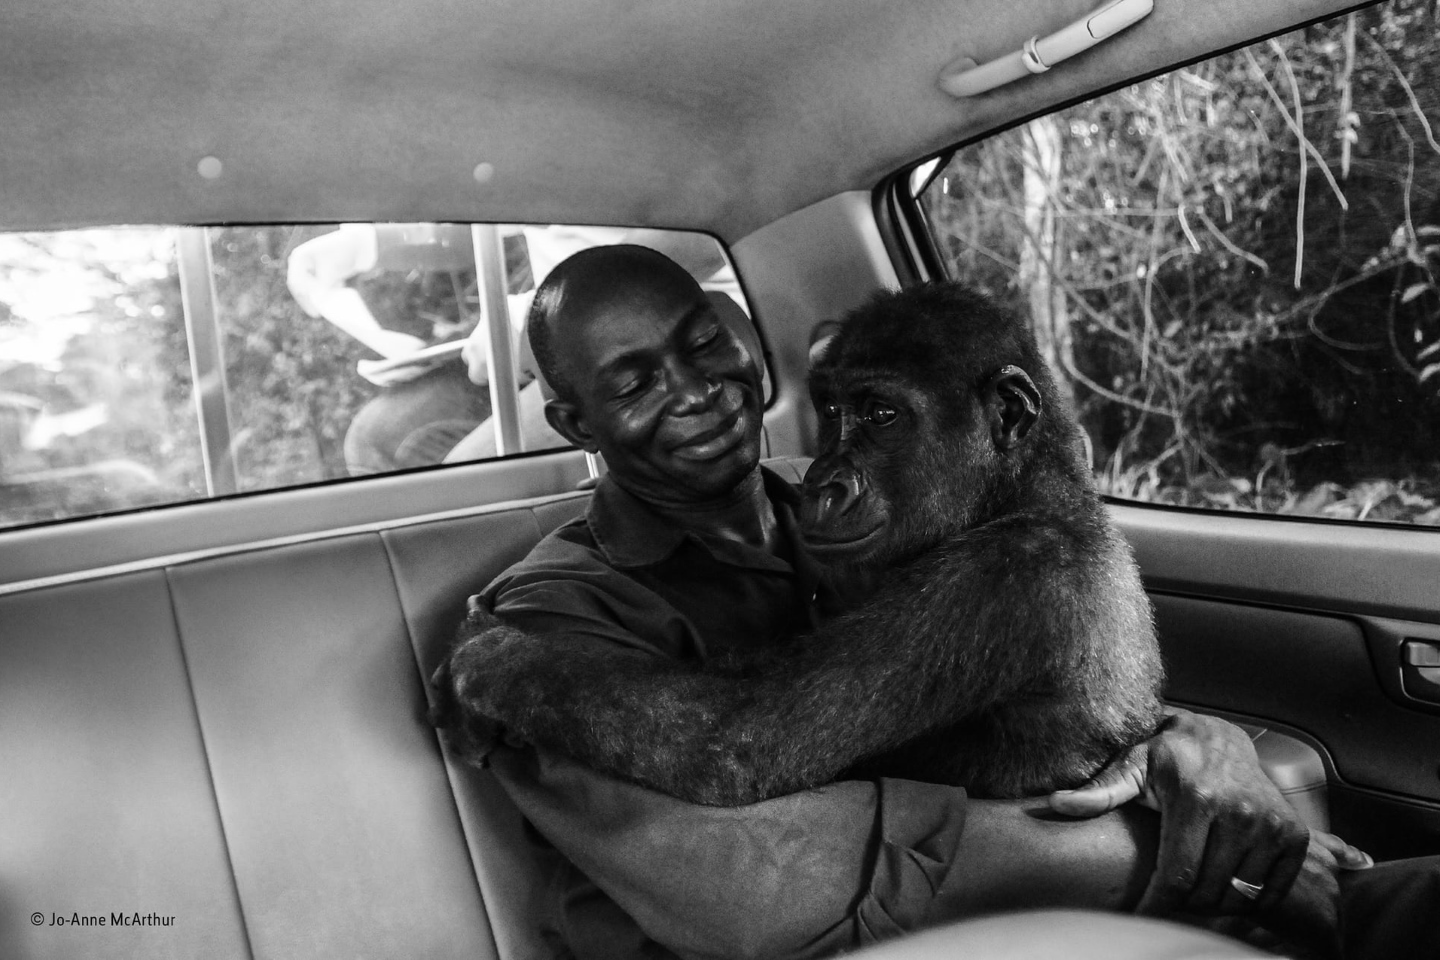 Приз зрительских симпатий: "Пикин и Апполинар". Горилла по имени Пикин, была поймана браконьерами и должна была продаваться на мясо на черном рынке, но была спасена благотворительной некоммерческой организацией Ape Action Africa. Фотограф Джо-Энн МакАртур сняла эту фотографию, когда гориллу перемещали из своего бывшего ограждения в безопасном лесном заповеднике в Камеруне в новое и более крупное убежище вместе с другой группой горилл. Сначала она была спокойна, но во время перехода к новому заповеднику проснулась. К счастью, она была не только очень сонливой, но и была в объятиях своего смотрителя, Апполинара Нидоудоу (Appolinaire Ndohoudou), и поэтому она оставалась спокойной на протяжении всего ухабистого драйва. Фото: Jo-Anne McArthur/Natural History Museum